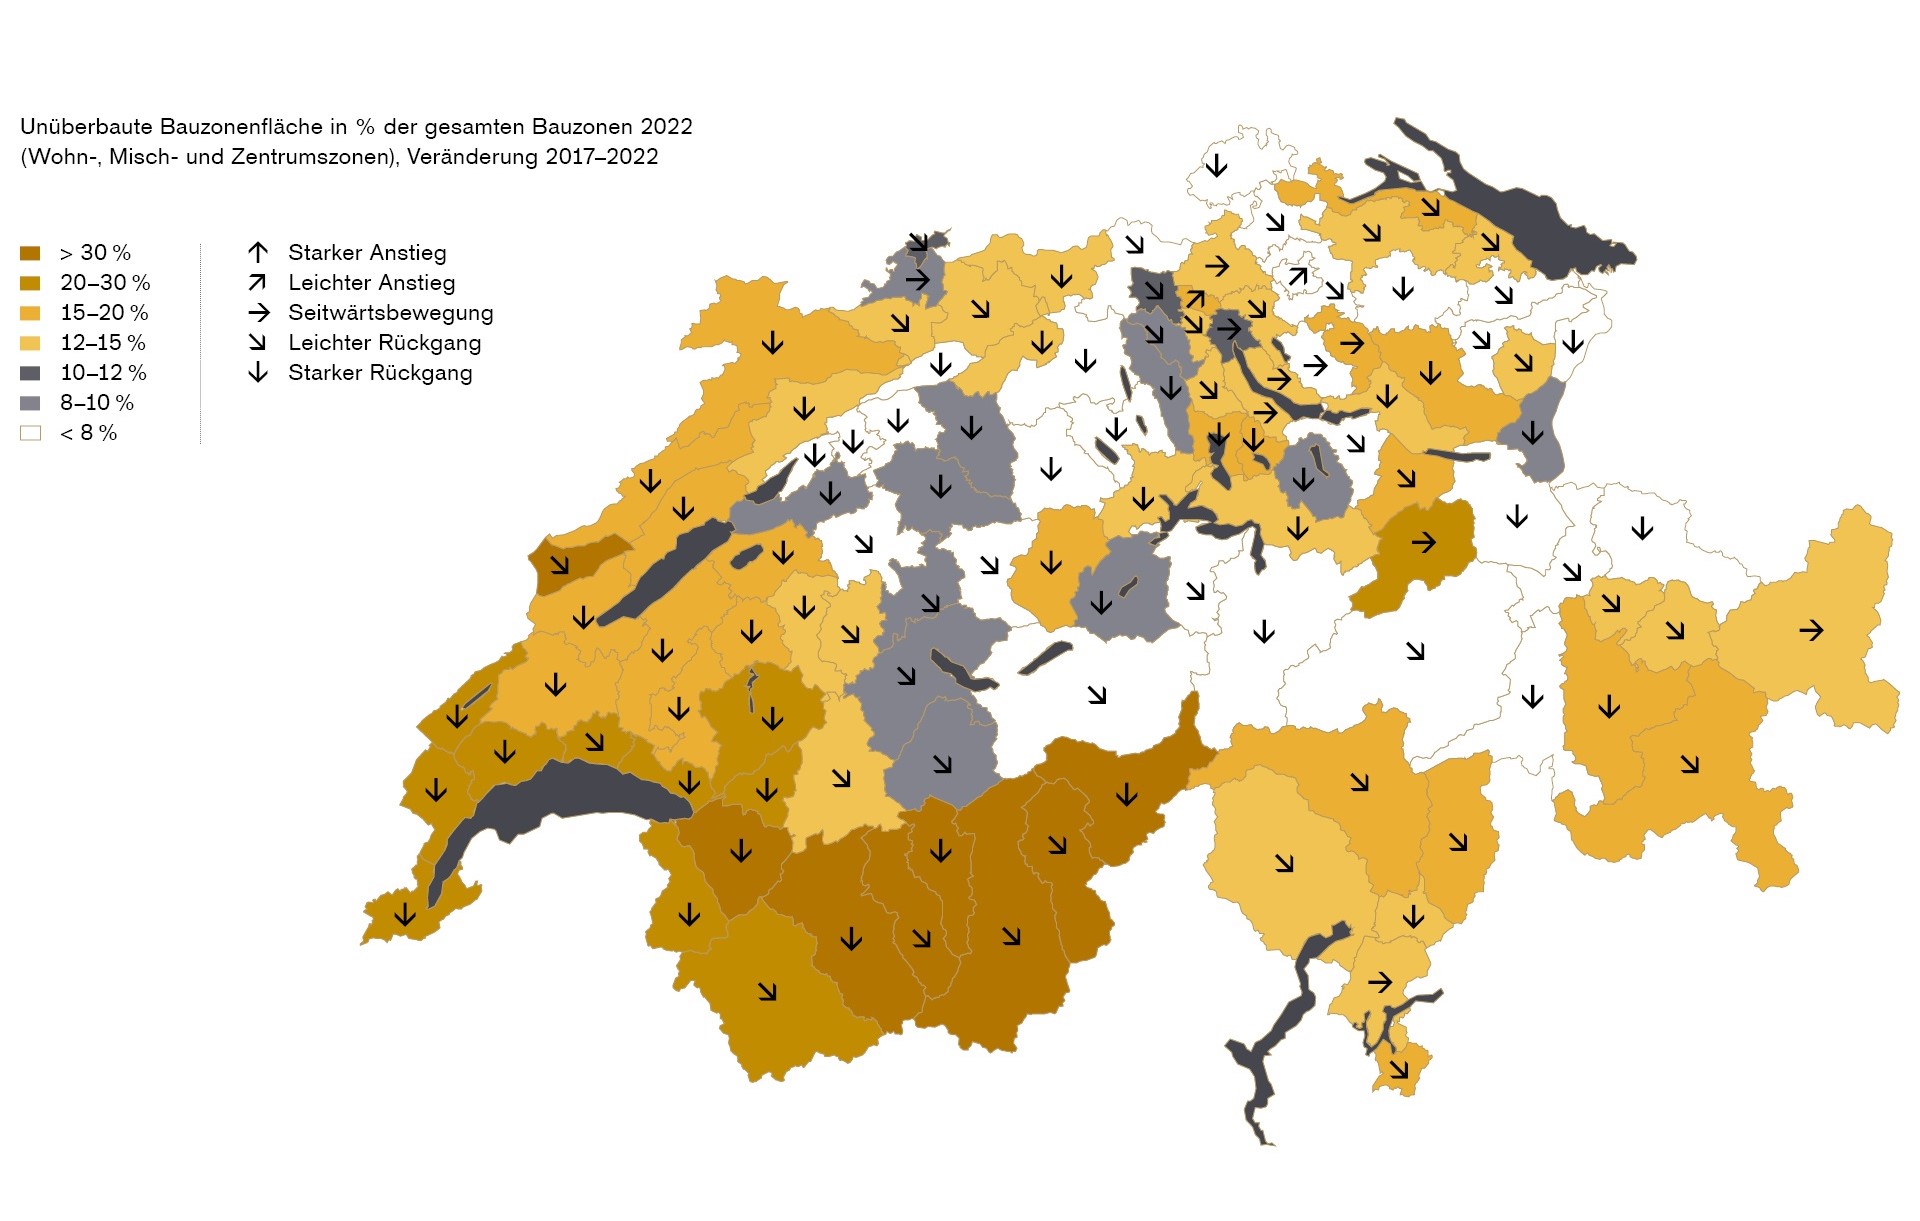 Kartenübersicht Entwicklung unbebaute Bauzonenfläche in Prozent der gesamten Bauzonen in der Schweiz.